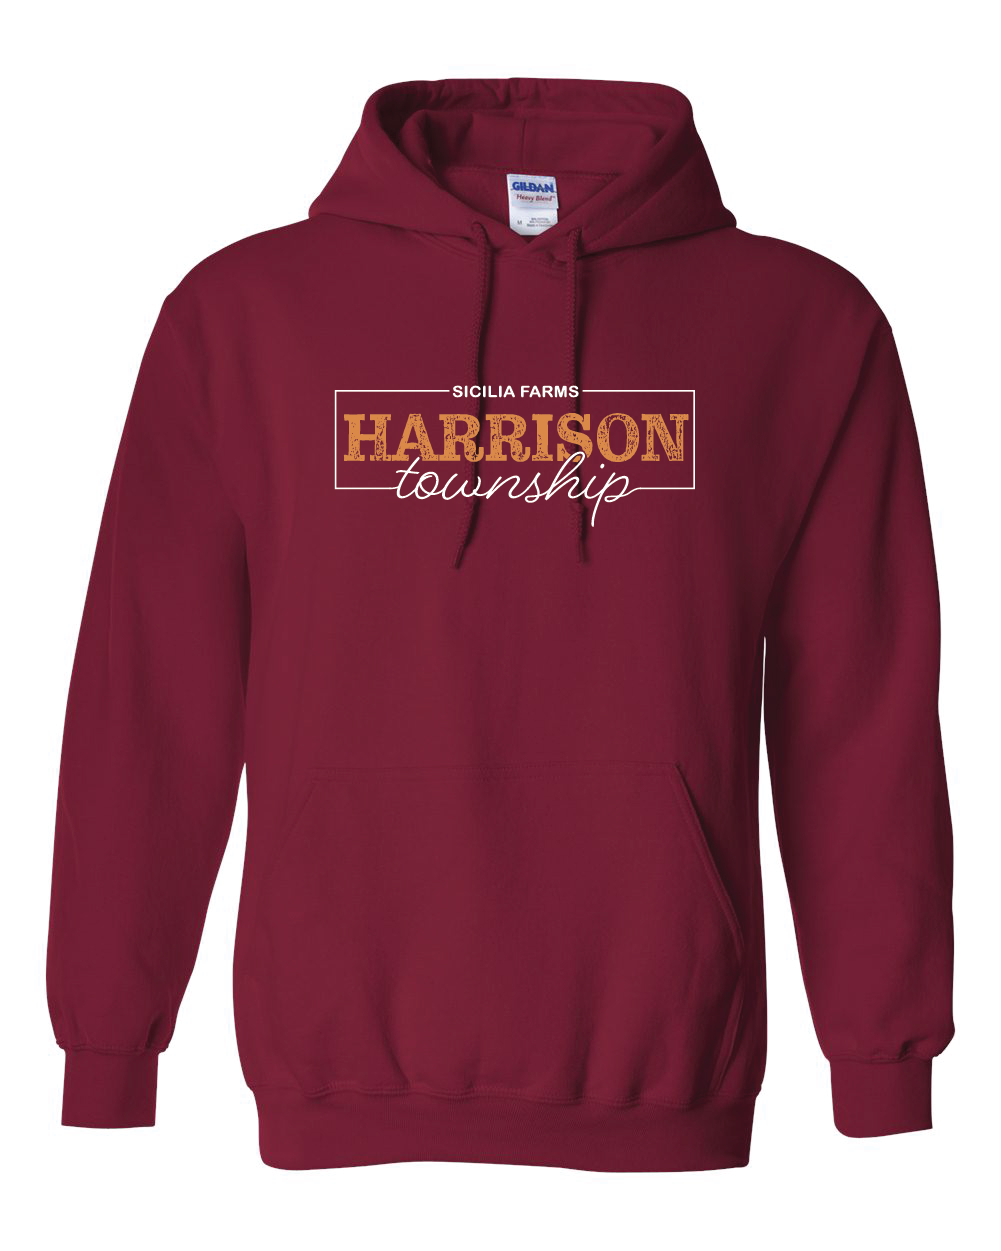 Harrison Township - Heavy Blend Hooded Sweatshirt